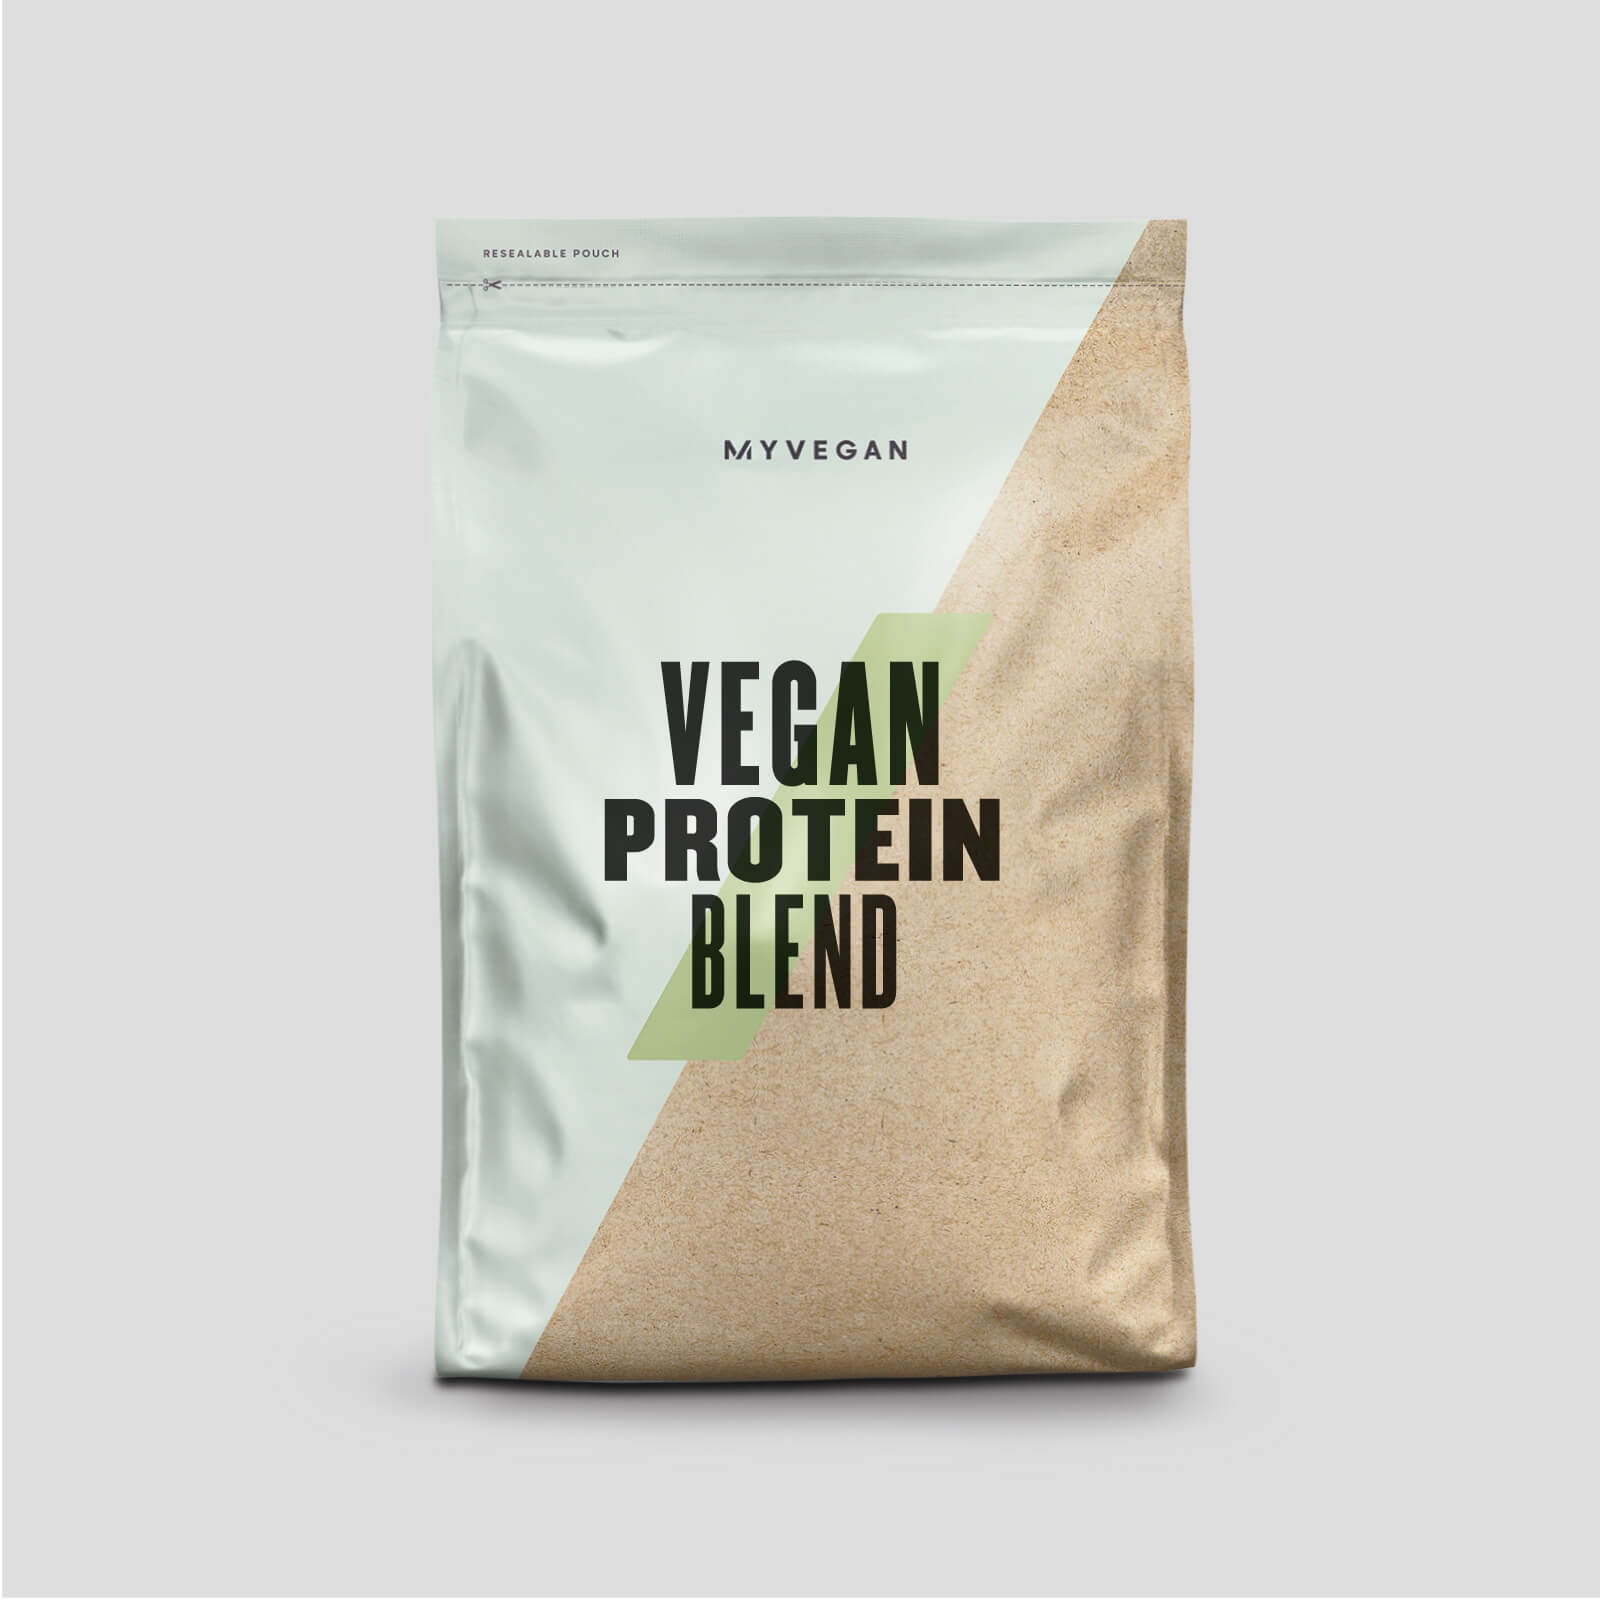 Myprotein Vegan Protein Blend - 1kg - Chocolate Salted Caramel